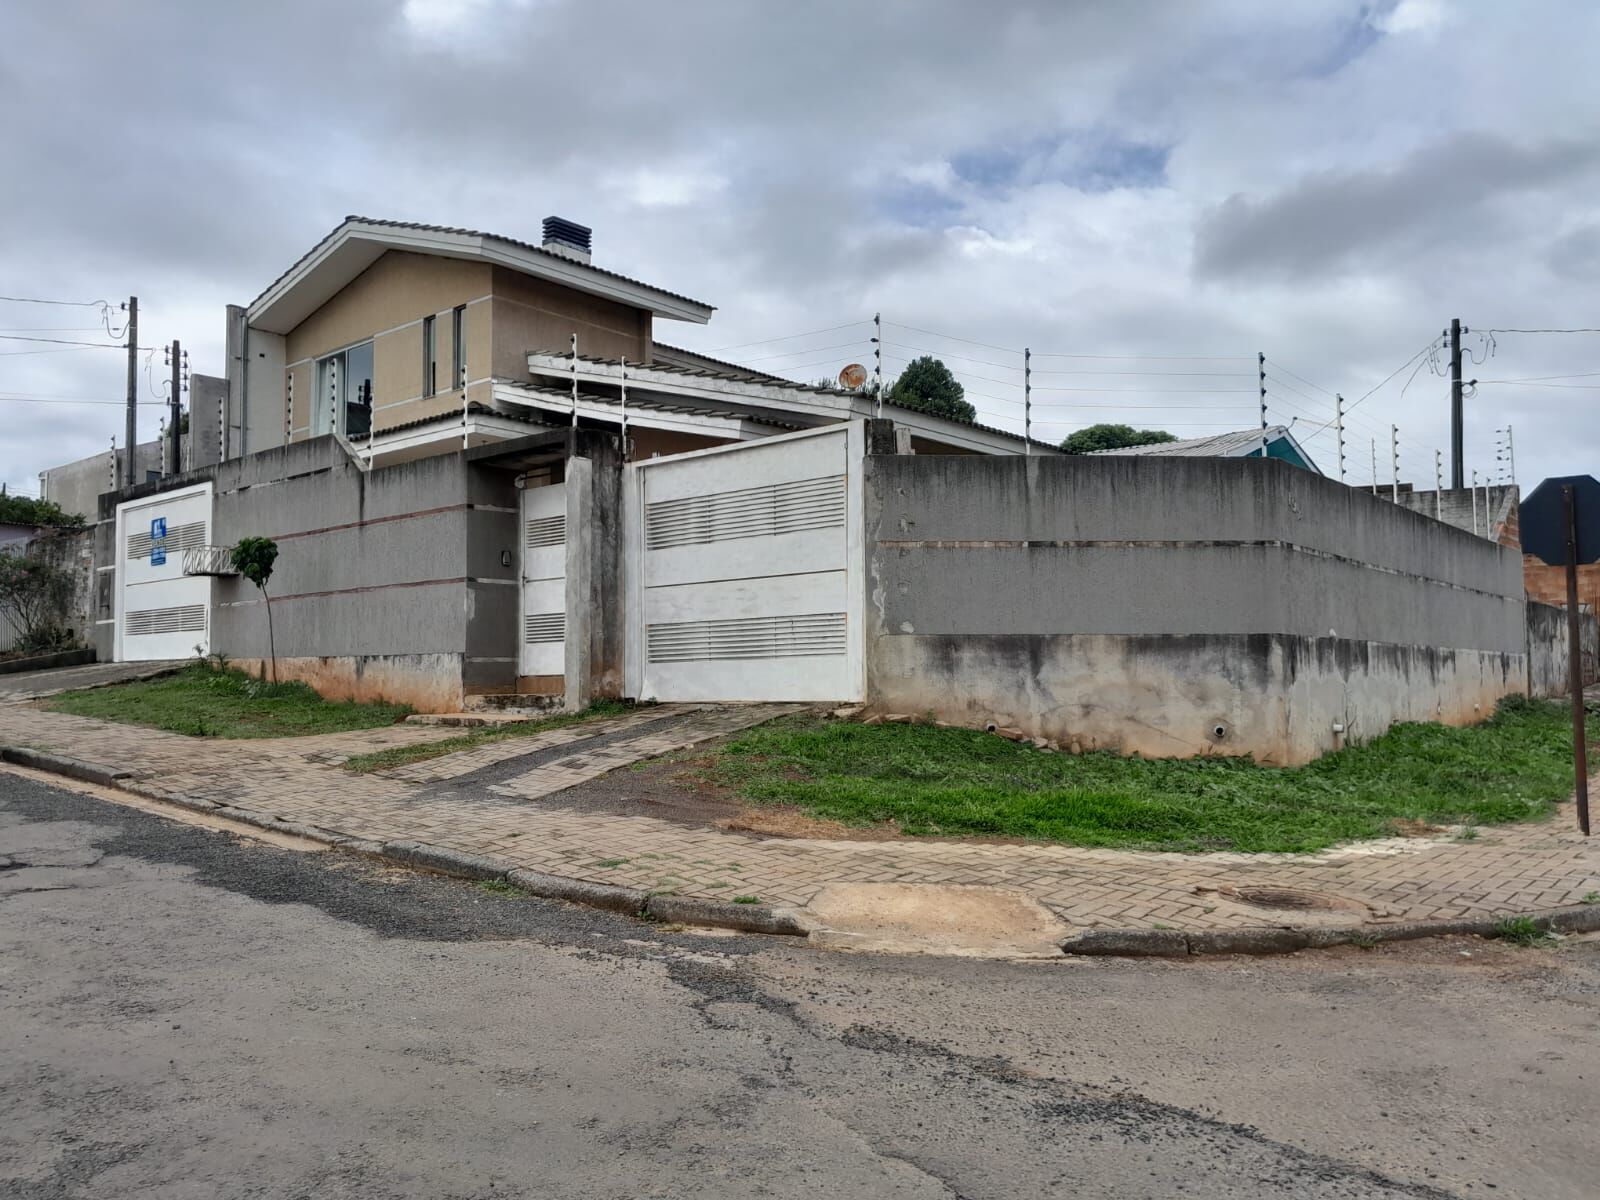 Sobrado com 4 dormitórios à venda, Morro Alto, GUARAPUAVA - PR